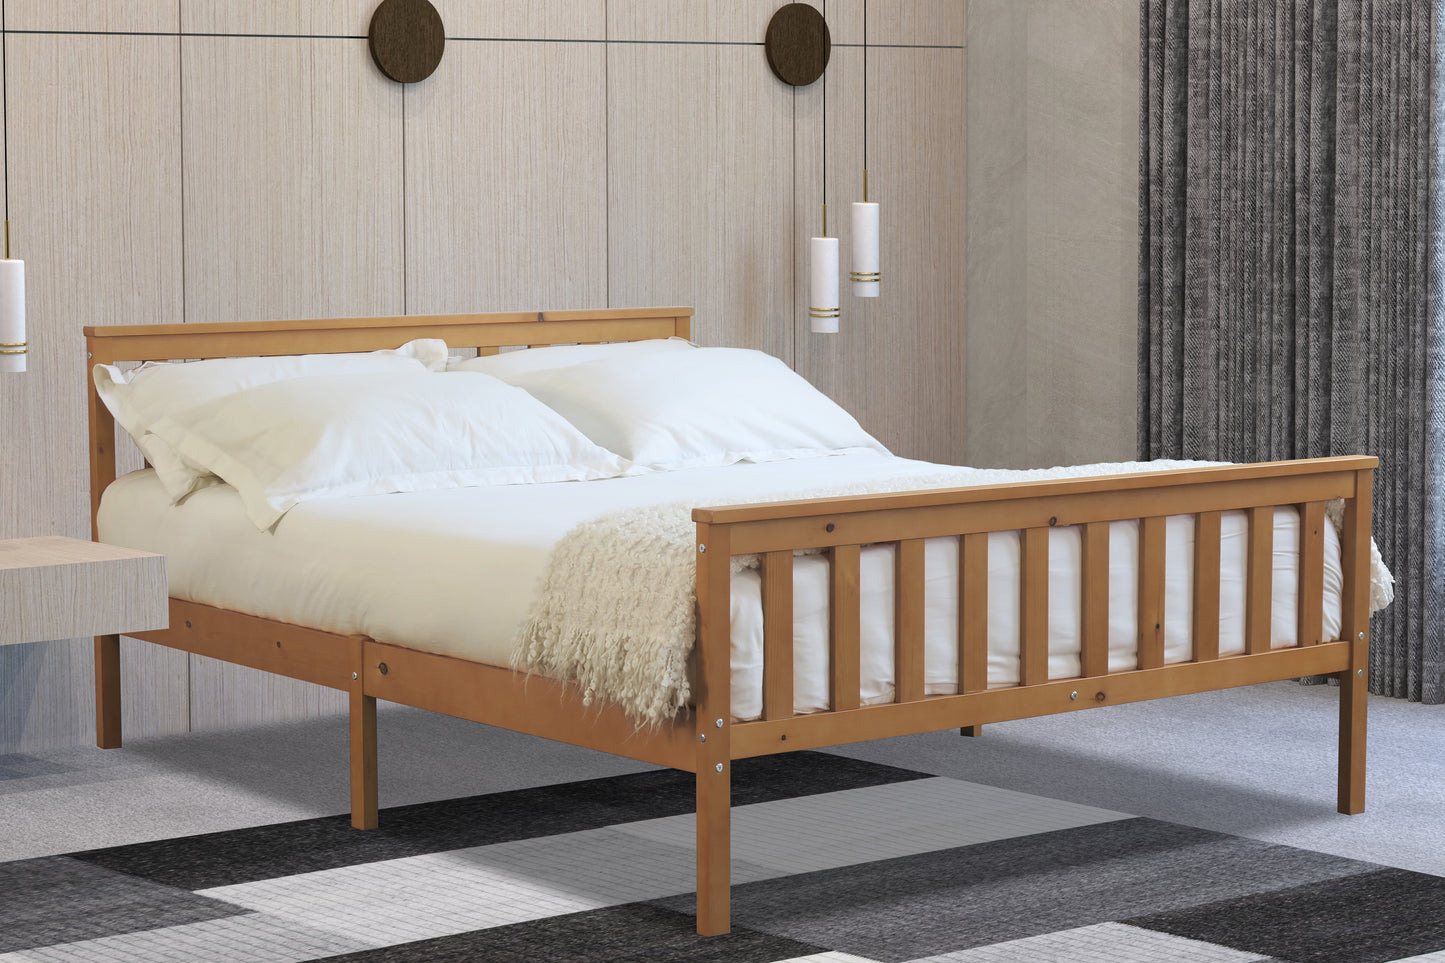 Flintshire Marnell Wooden Bed Frame